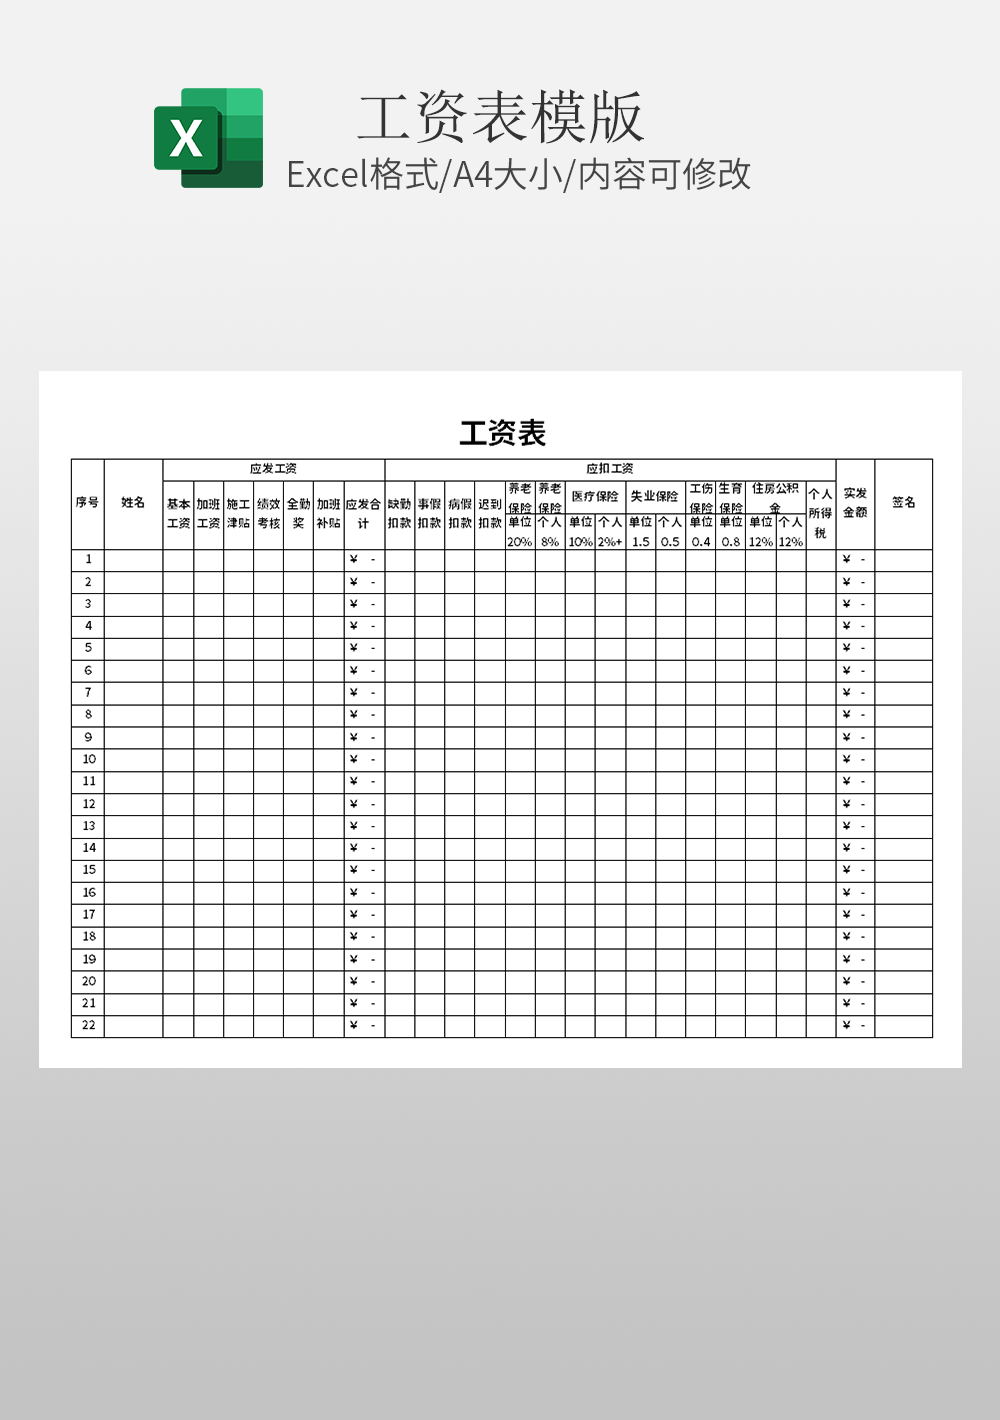 基本绩效考核通用工资表Excel模板